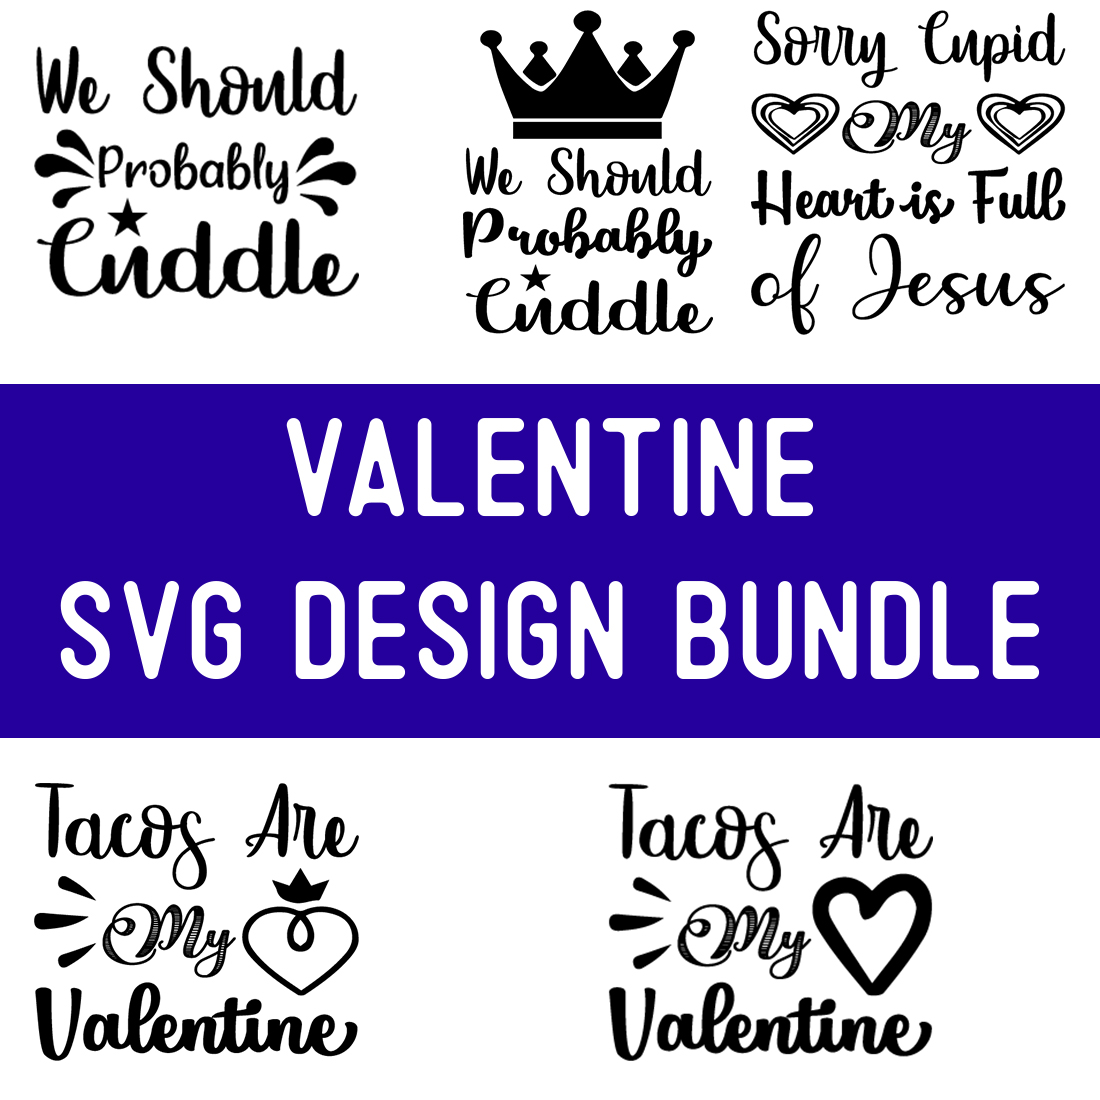 Valentine SVG Design Bundle cover image.